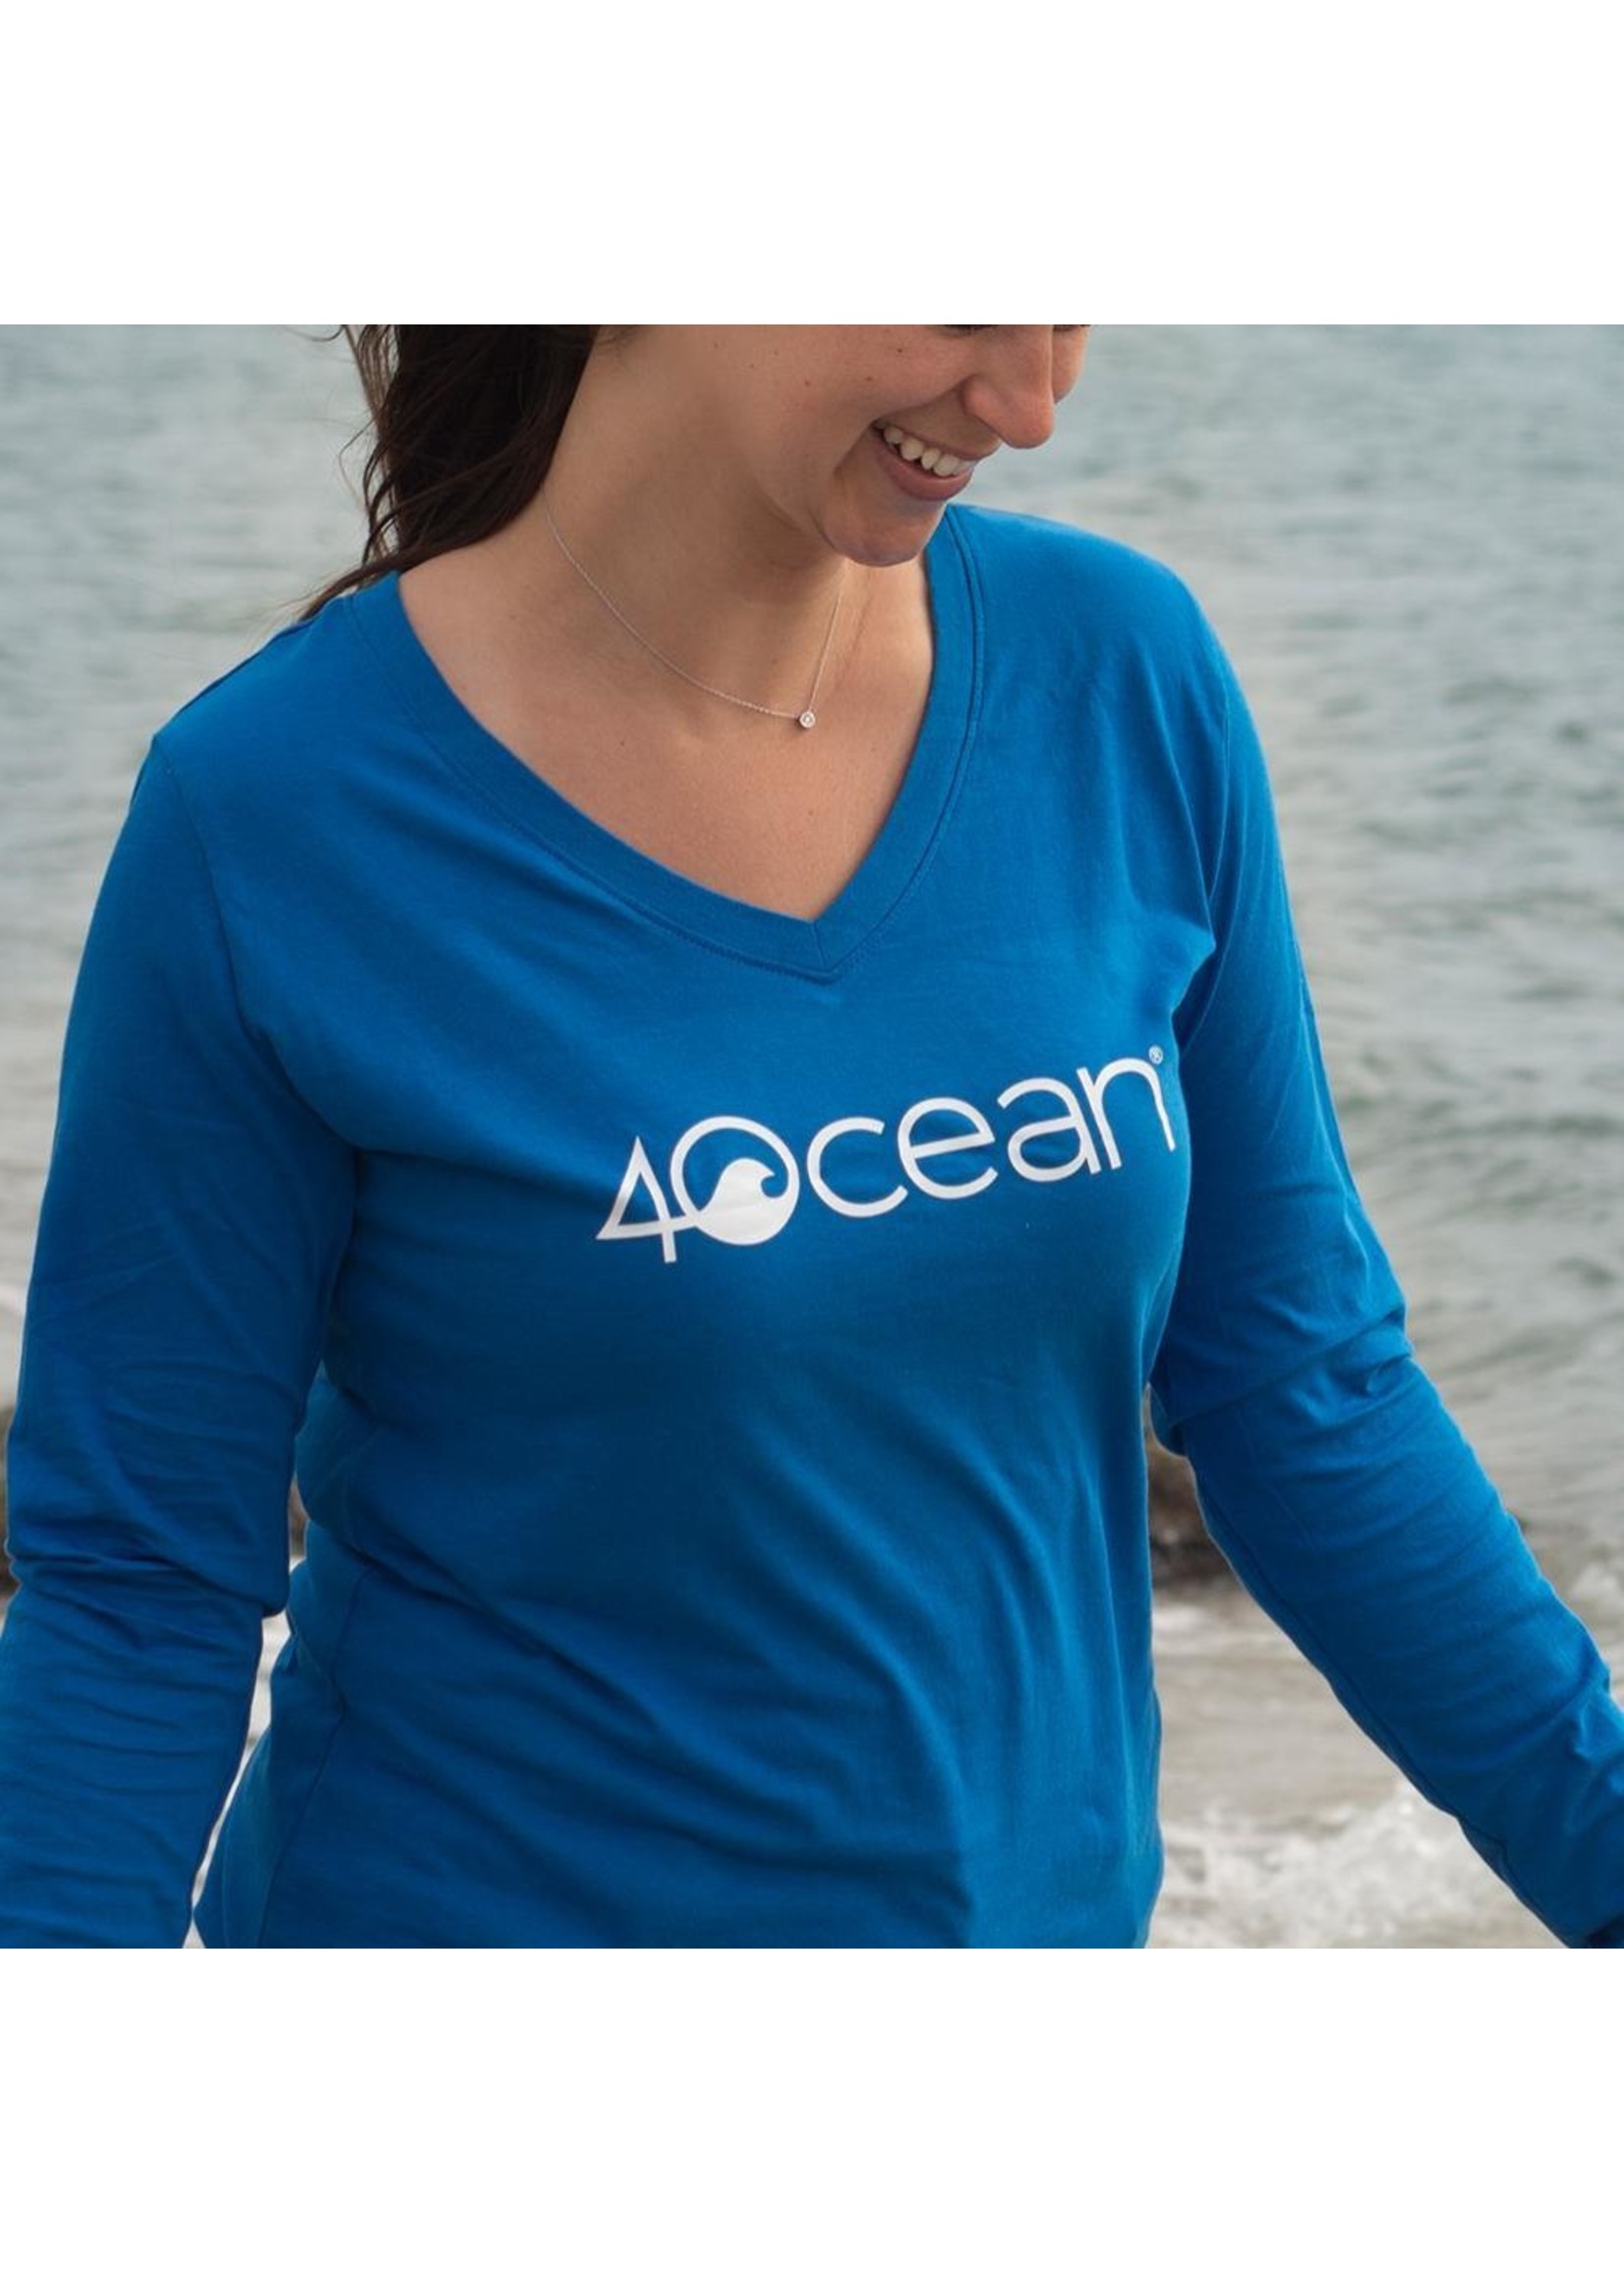 4Ocean Women's 4ocean Logo Long Sleeve V-Neck